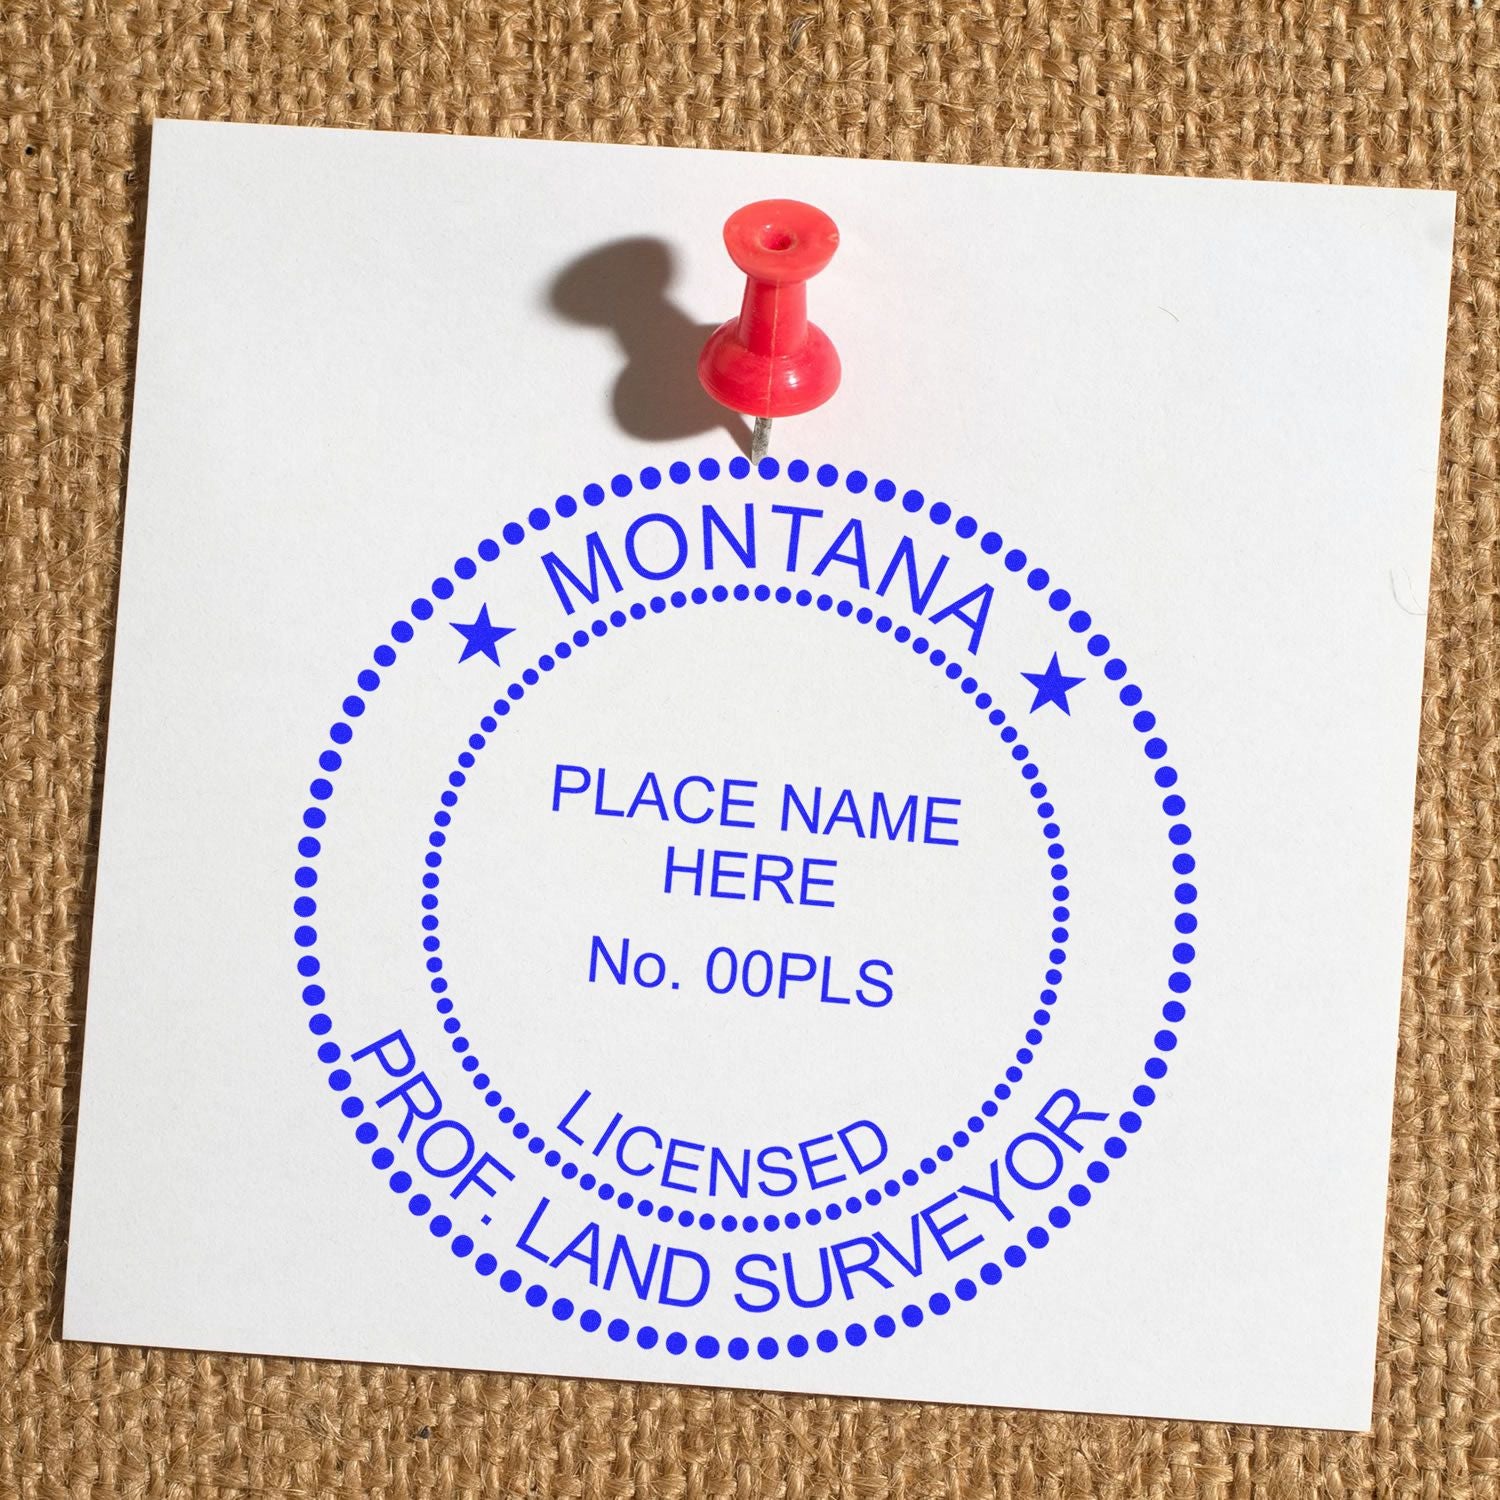 Montana Land Surveyor Seal Stamp In Use Photo